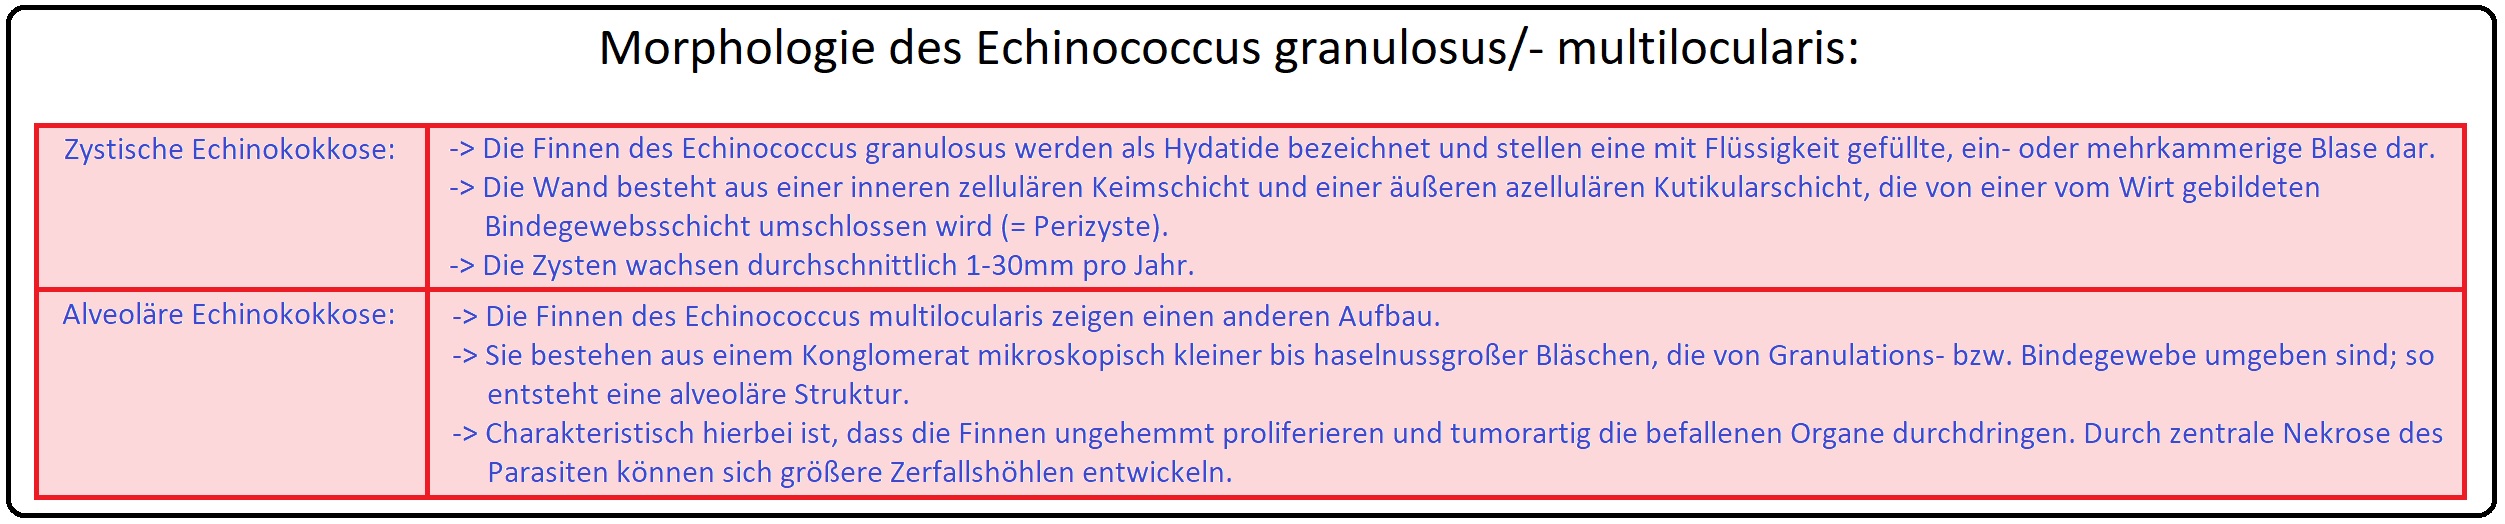 762 Morphologie des Echinococcus granulosus bzw.   multilocularis